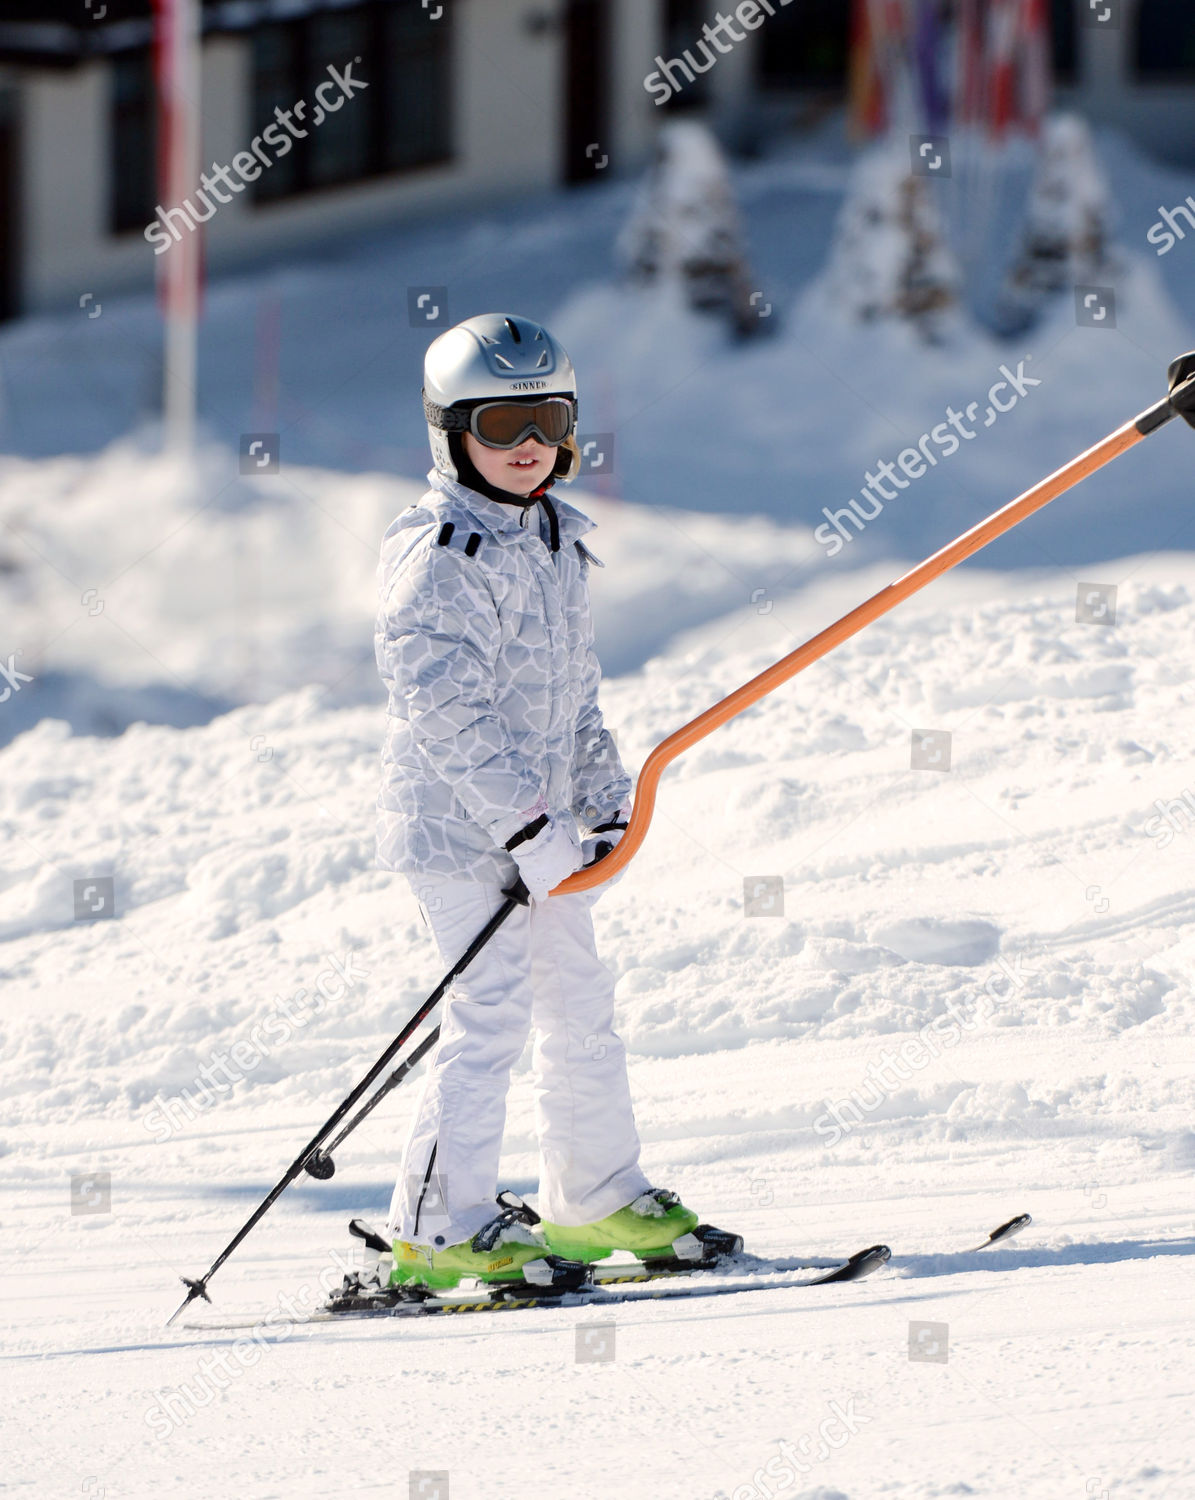 dutch-royals-skiing-photocall-lech-austria-shutterstock-editorial-2148227ag.jpg